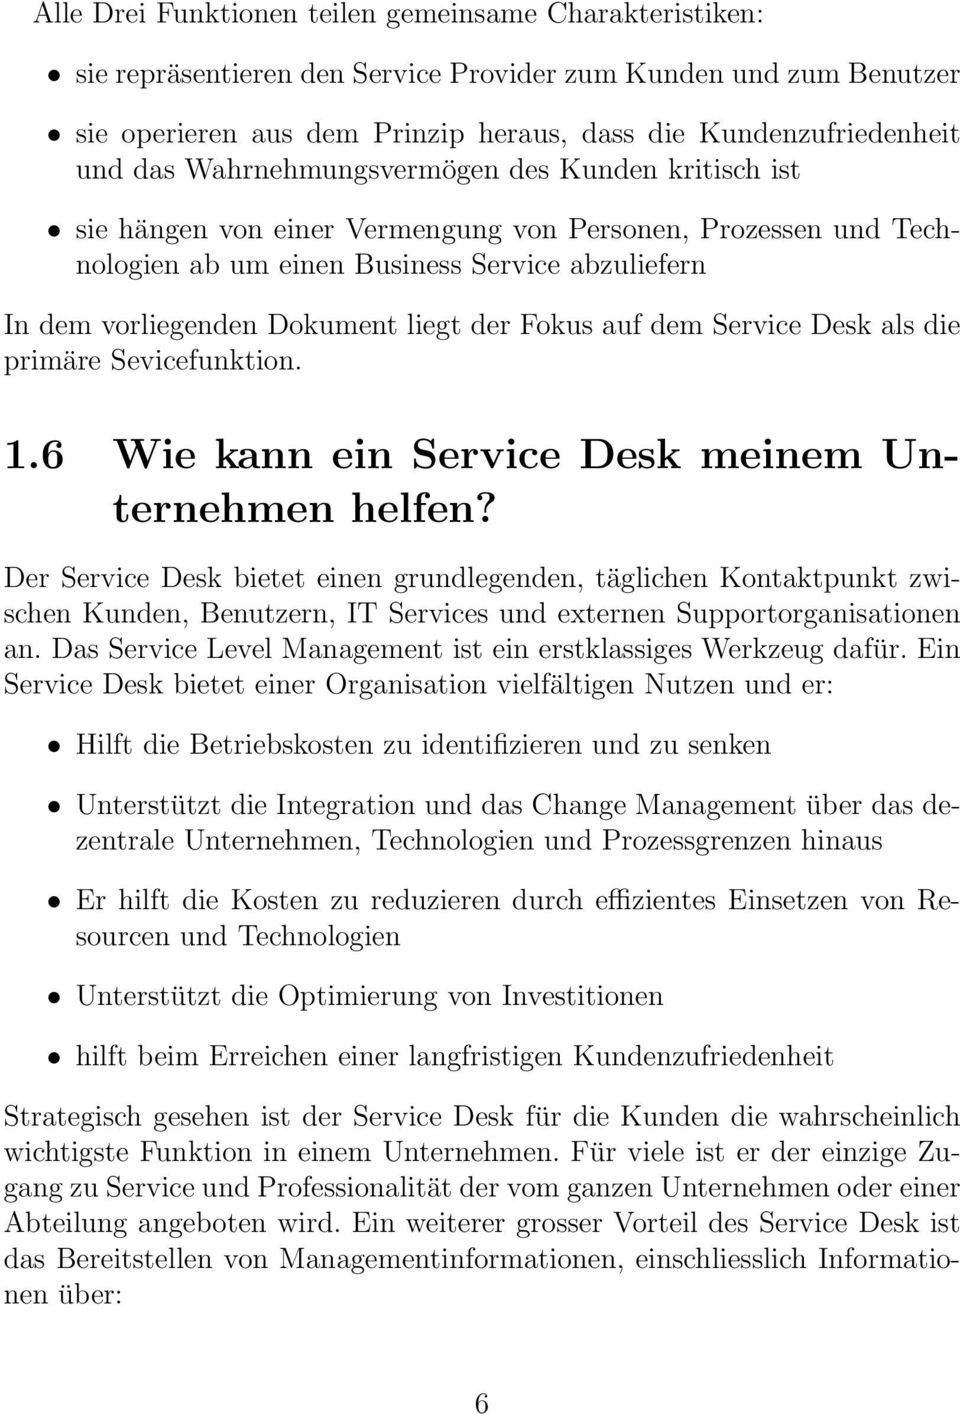 Fokus auf dem Service Desk als die primäre Sevicefunktion. 1.6 Wie kann ein Service Desk meinem Unternehmen helfen?